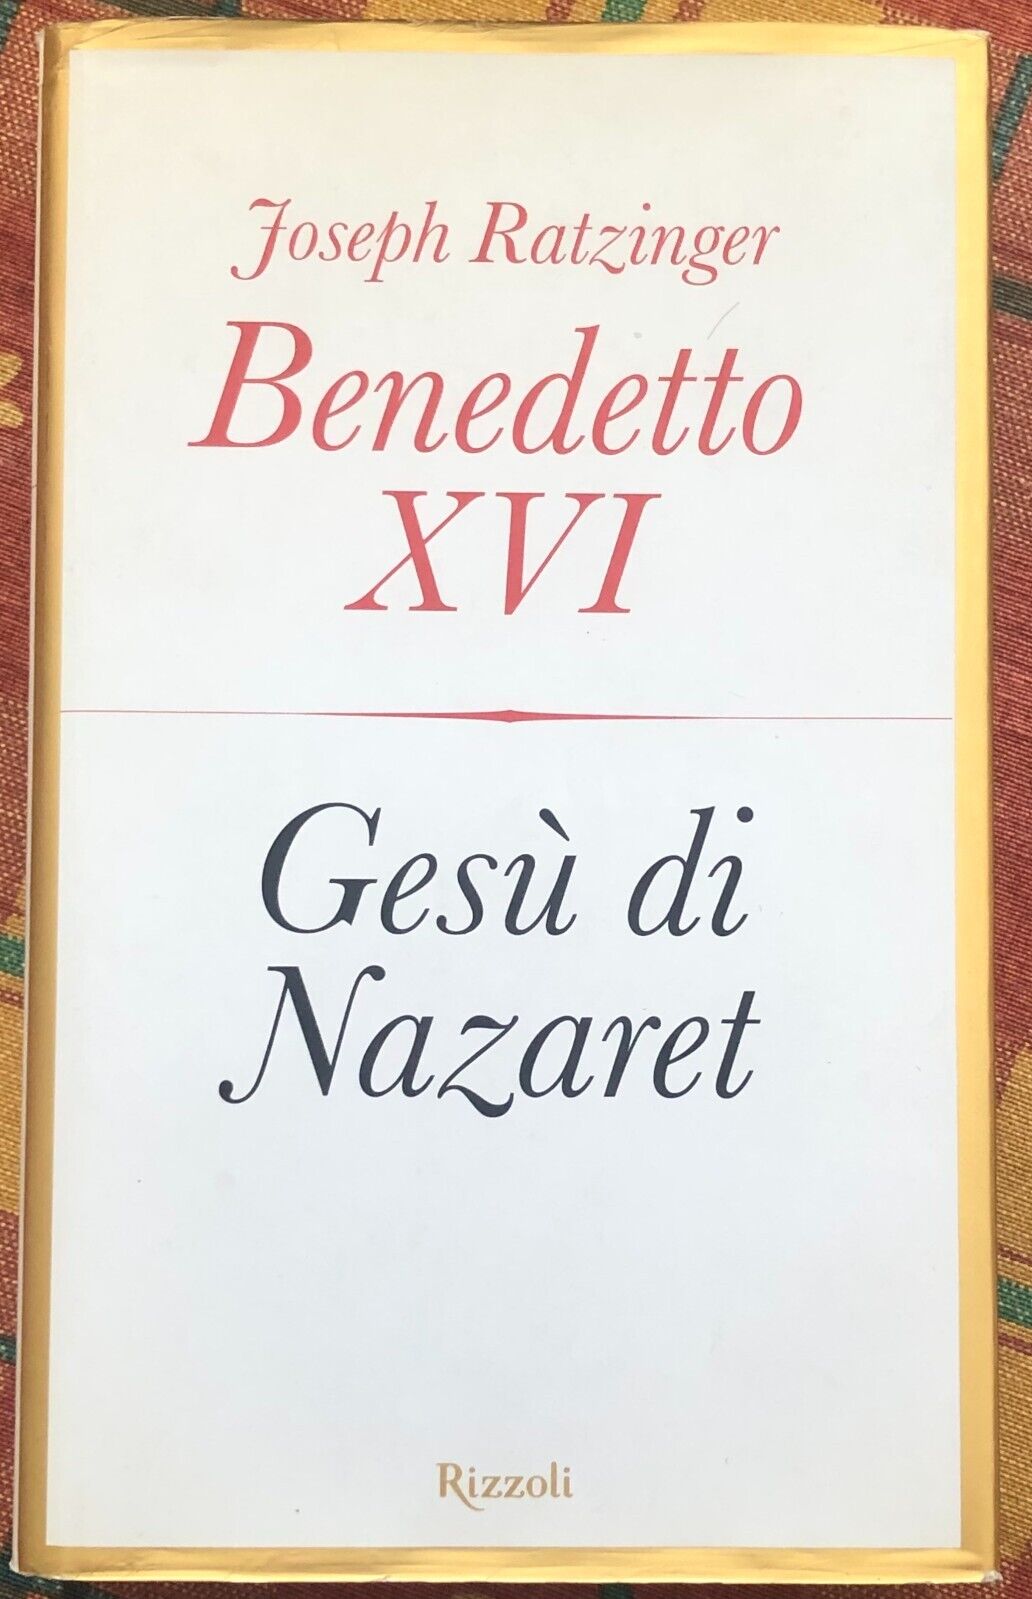 Ges? di Nazaret di Benedetto XVI (Joseph Ratzinger), 2007, Rizzoli libro usato